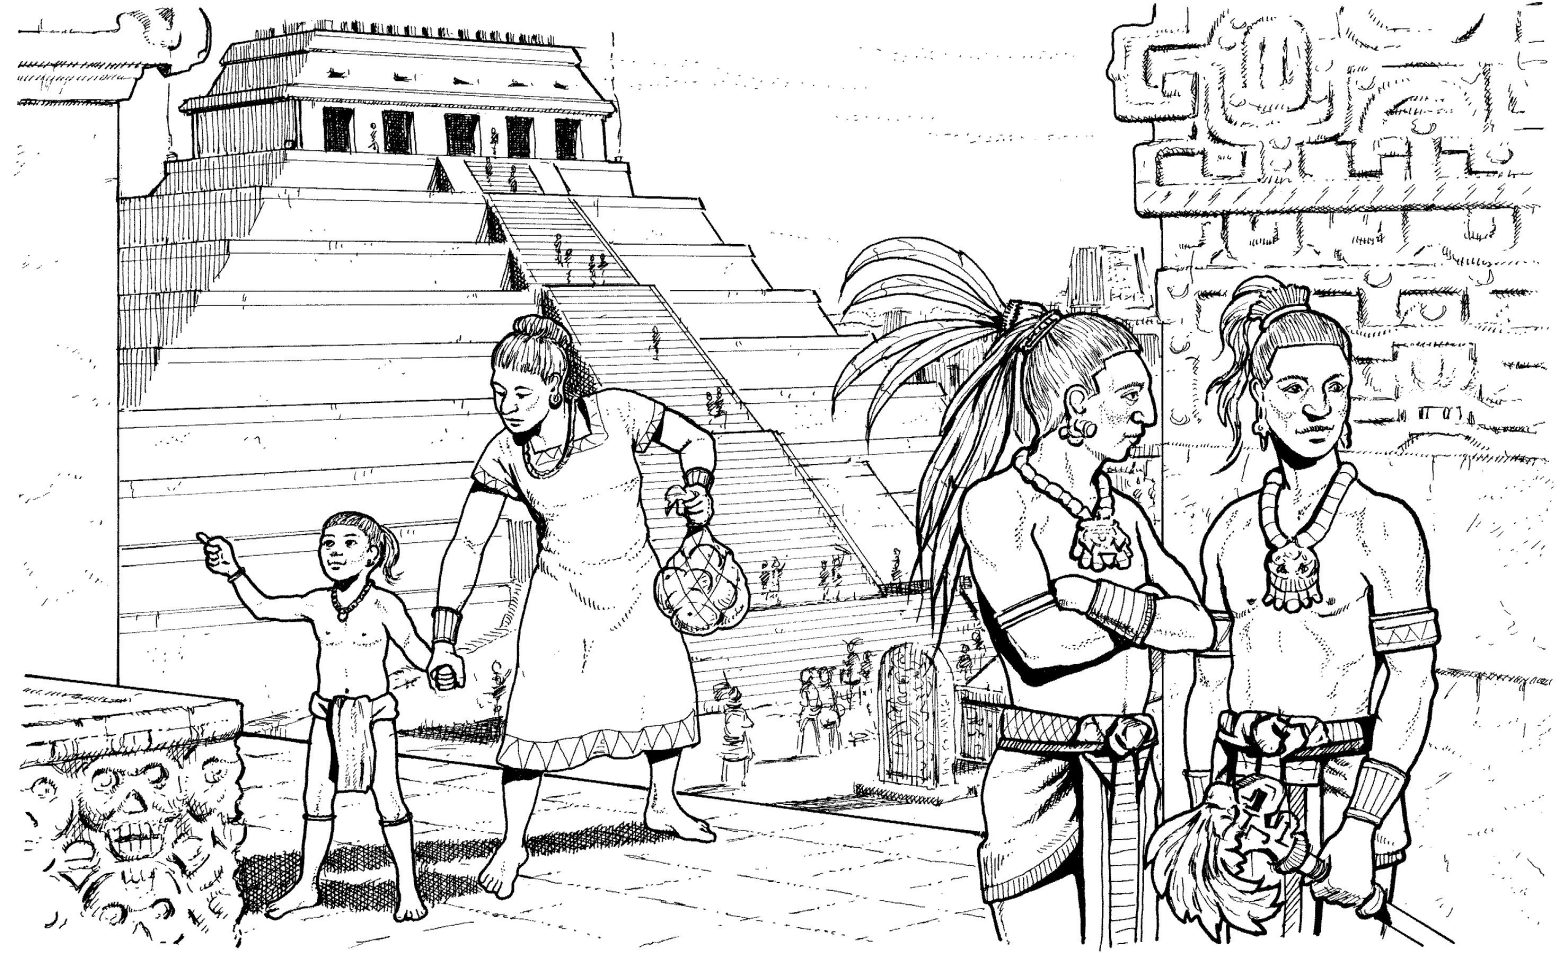 Раскраска на тему древнего мира и народа майя для мальчиков (майя)